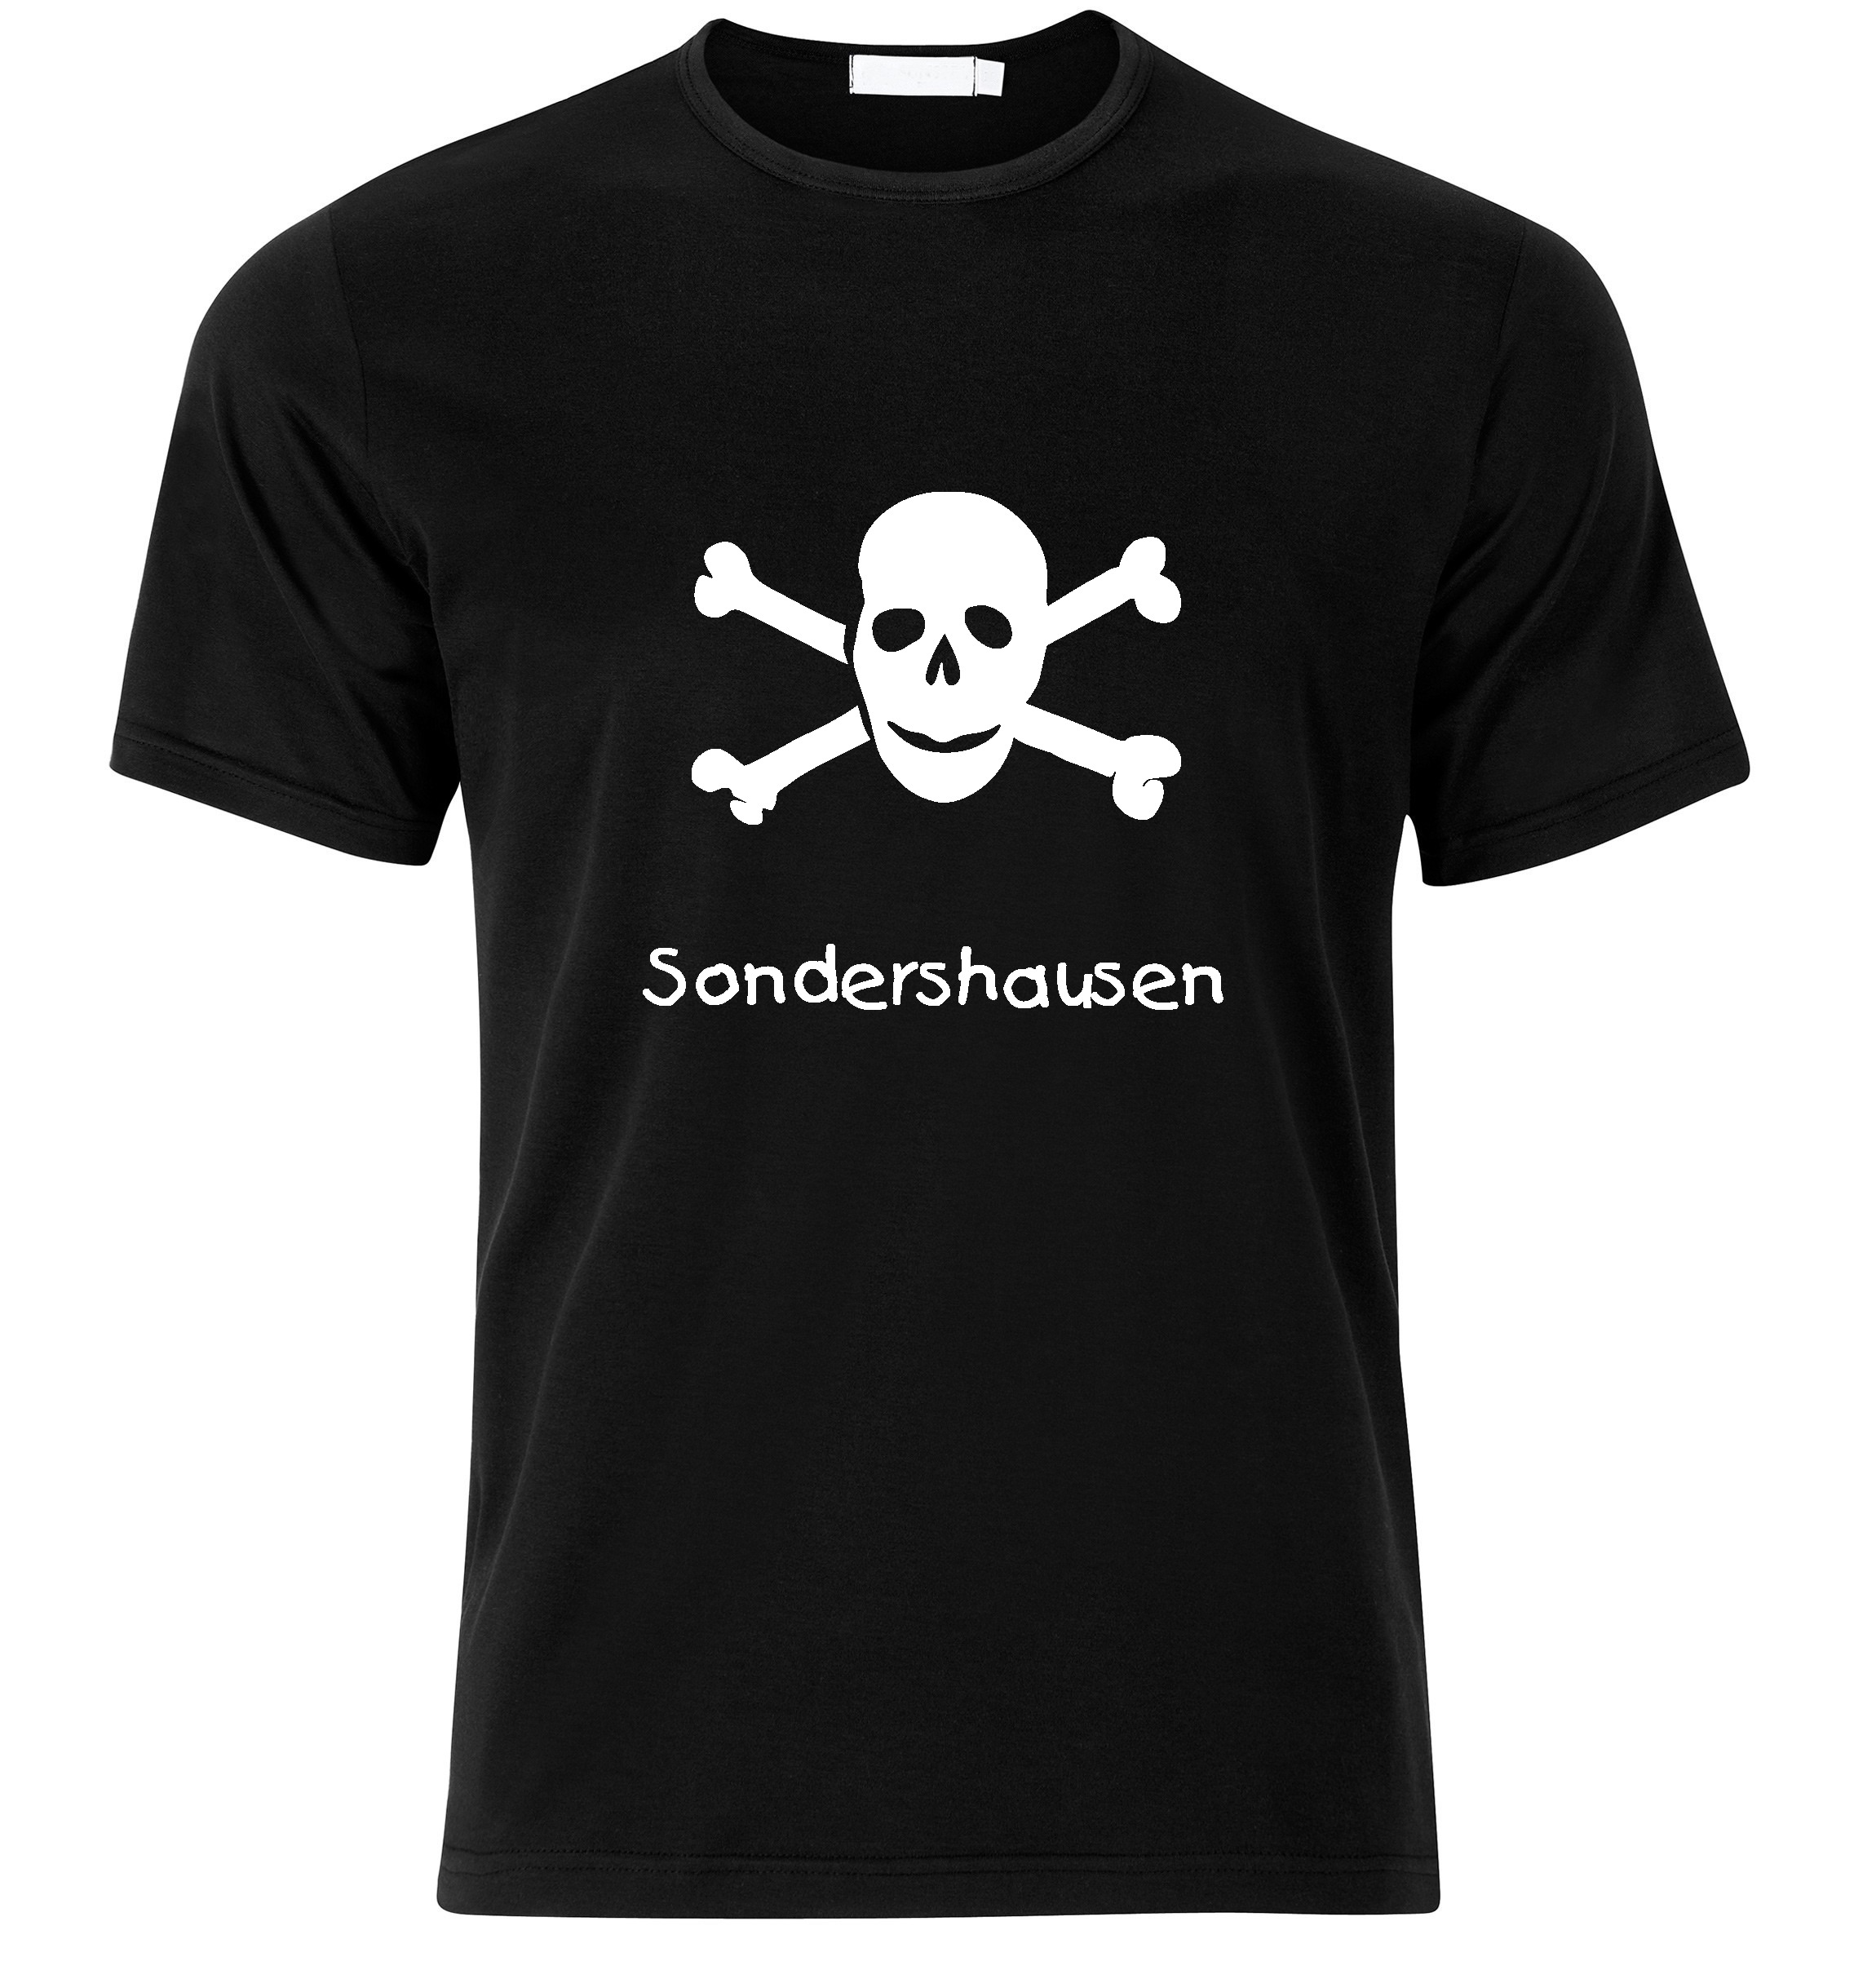 T-Shirt Sondershausen Jolly Roger, Totenkopf